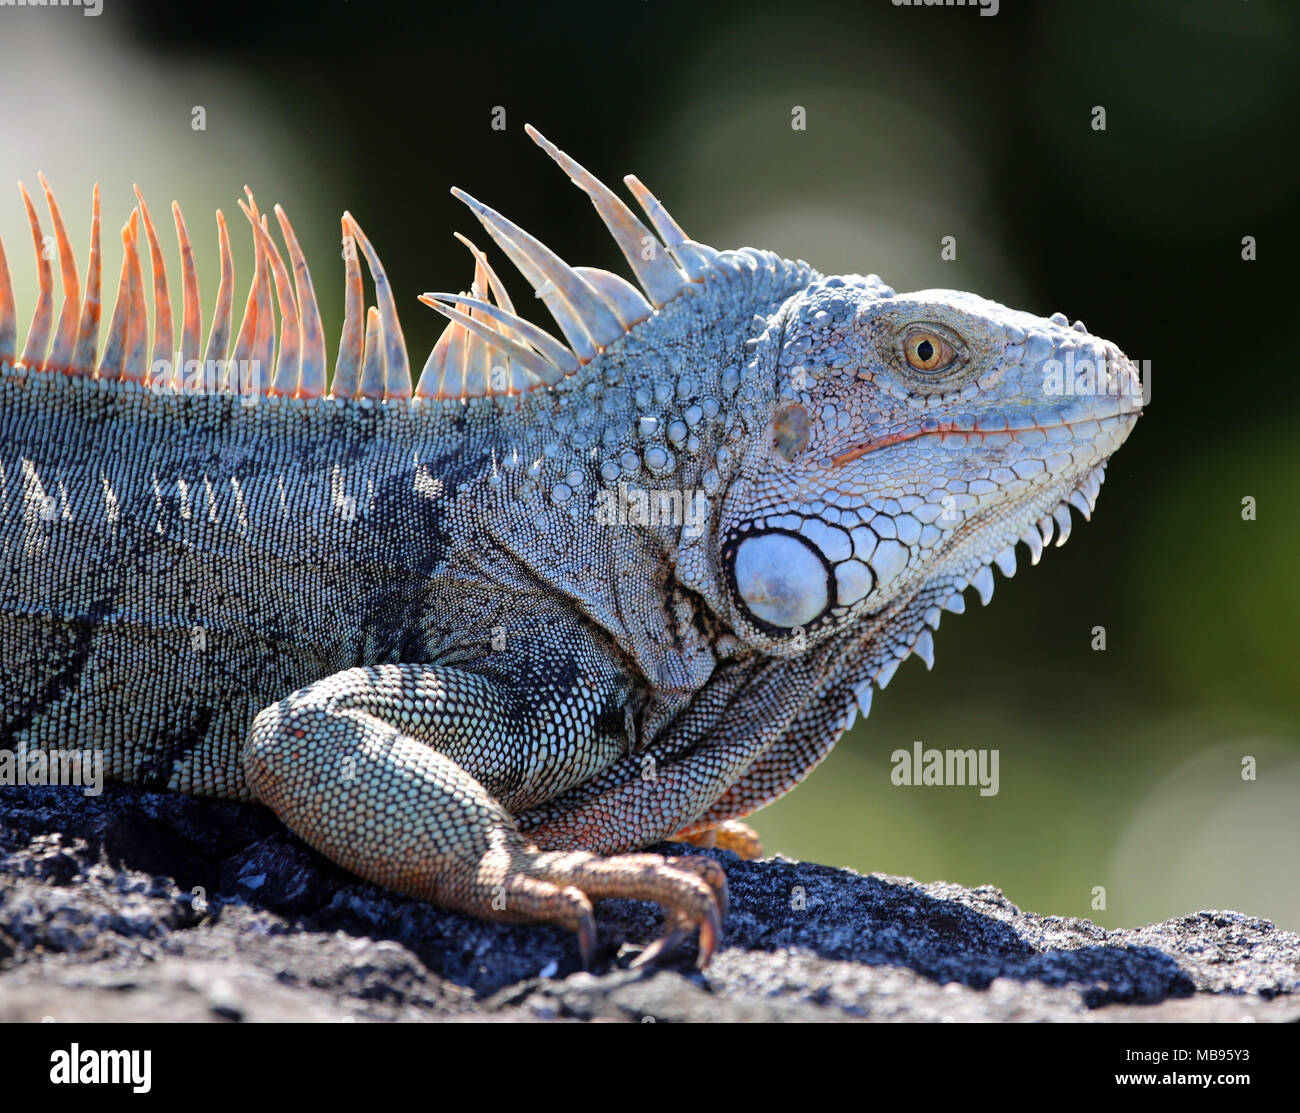 Iguana con en blanco y negro de piel con textura, Golden Eye y espinas rojizas Foto de stock